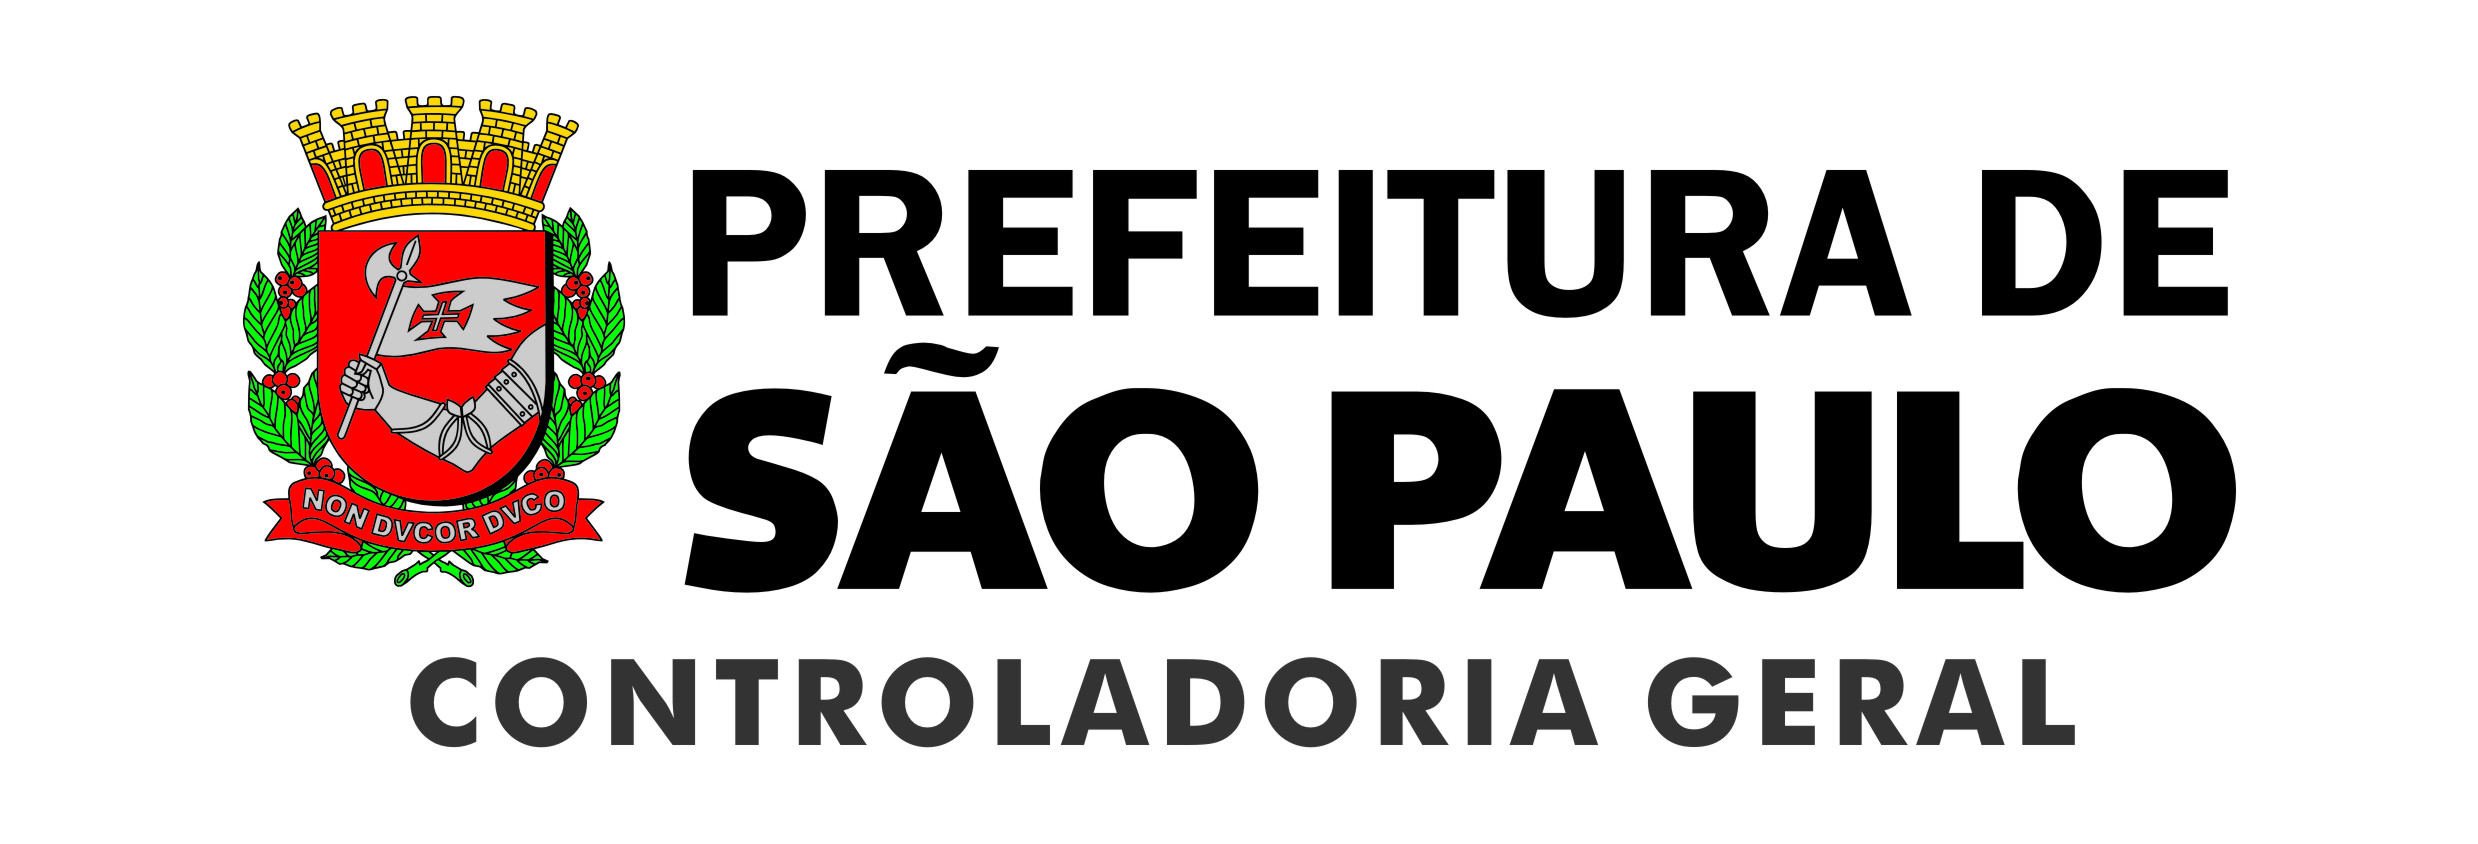 Prefeitura de So Paulo